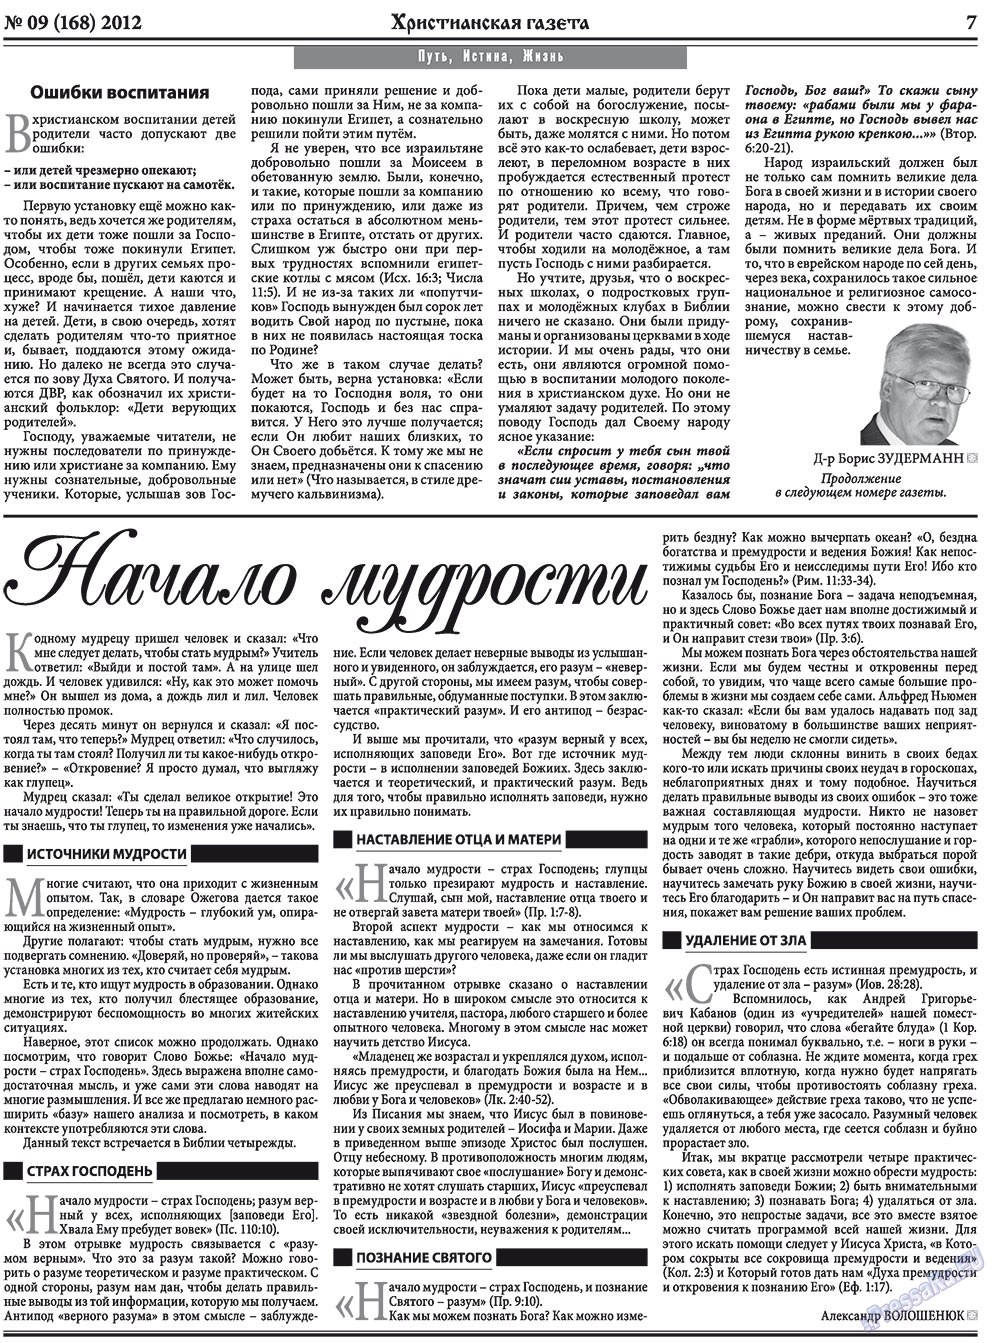 Христианская газета, газета. 2012 №9 стр.7